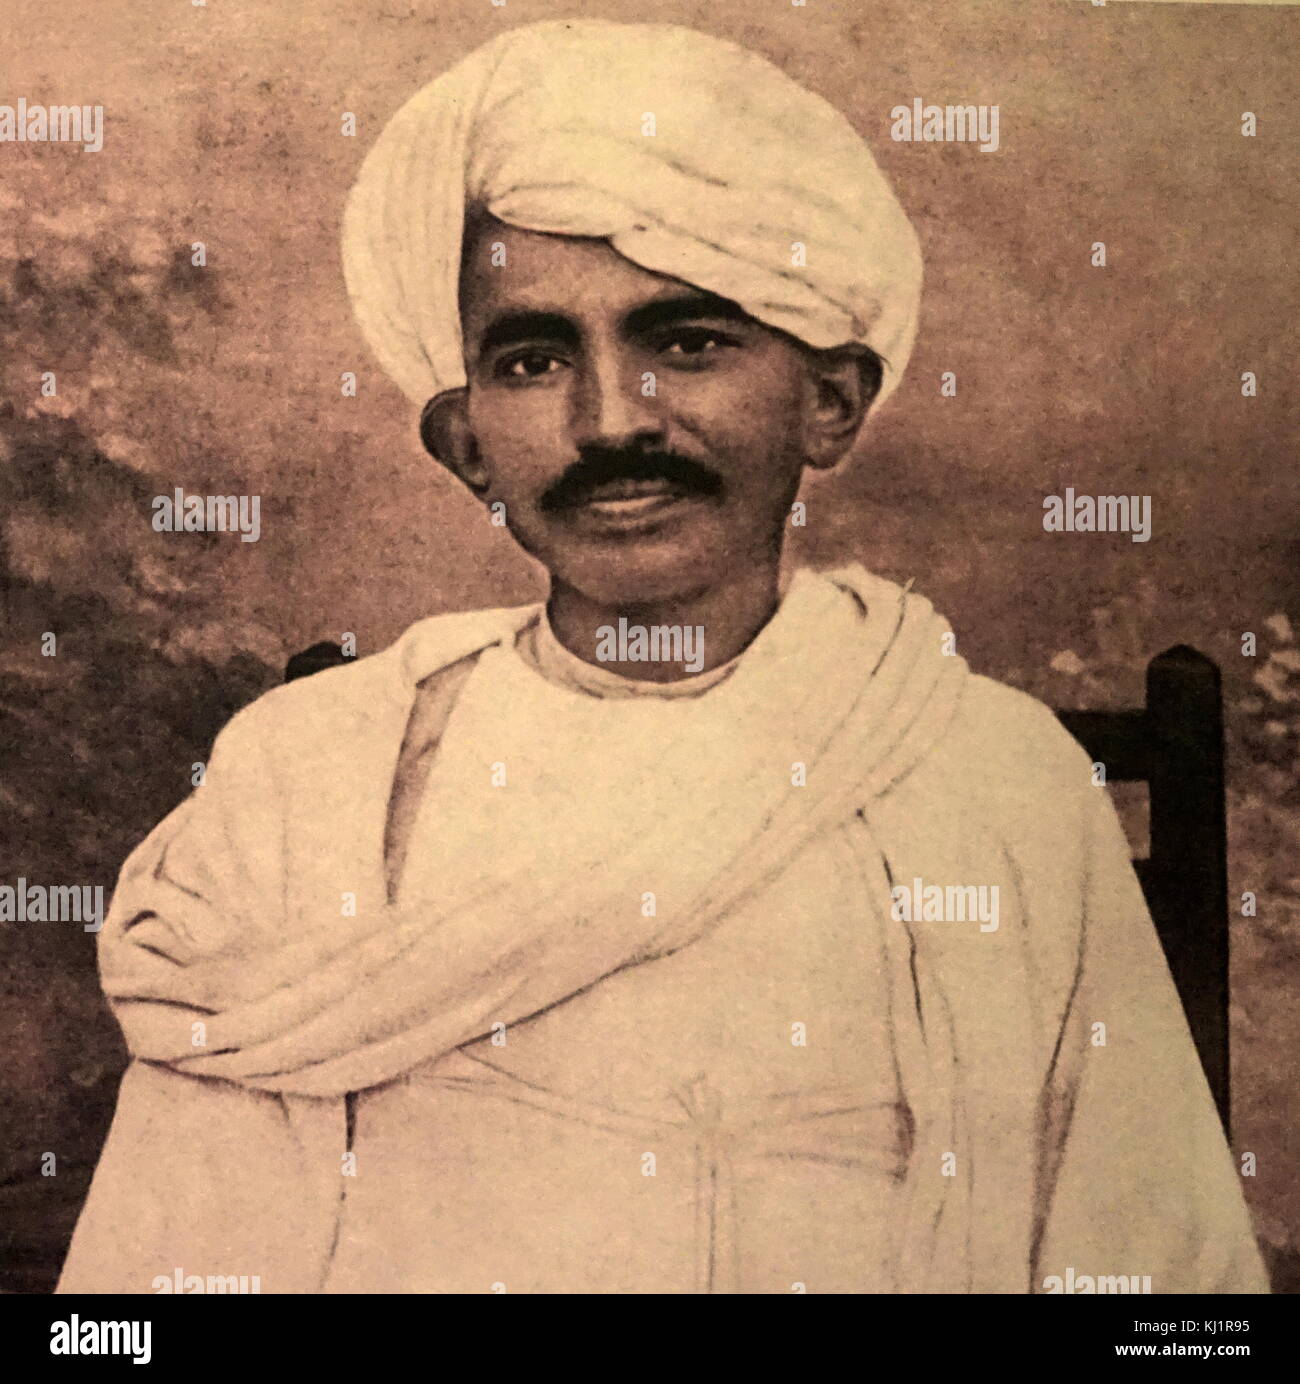 Les jeunes et l'avenir de Satyagraha le Mahatma Gandhi en Afrique du Sud, Mohandas Karamchand Gandhi 1869 - 1948), principal leader de l'indépendance de l'Inde en mouvement a décidé de l'Inde. Banque D'Images